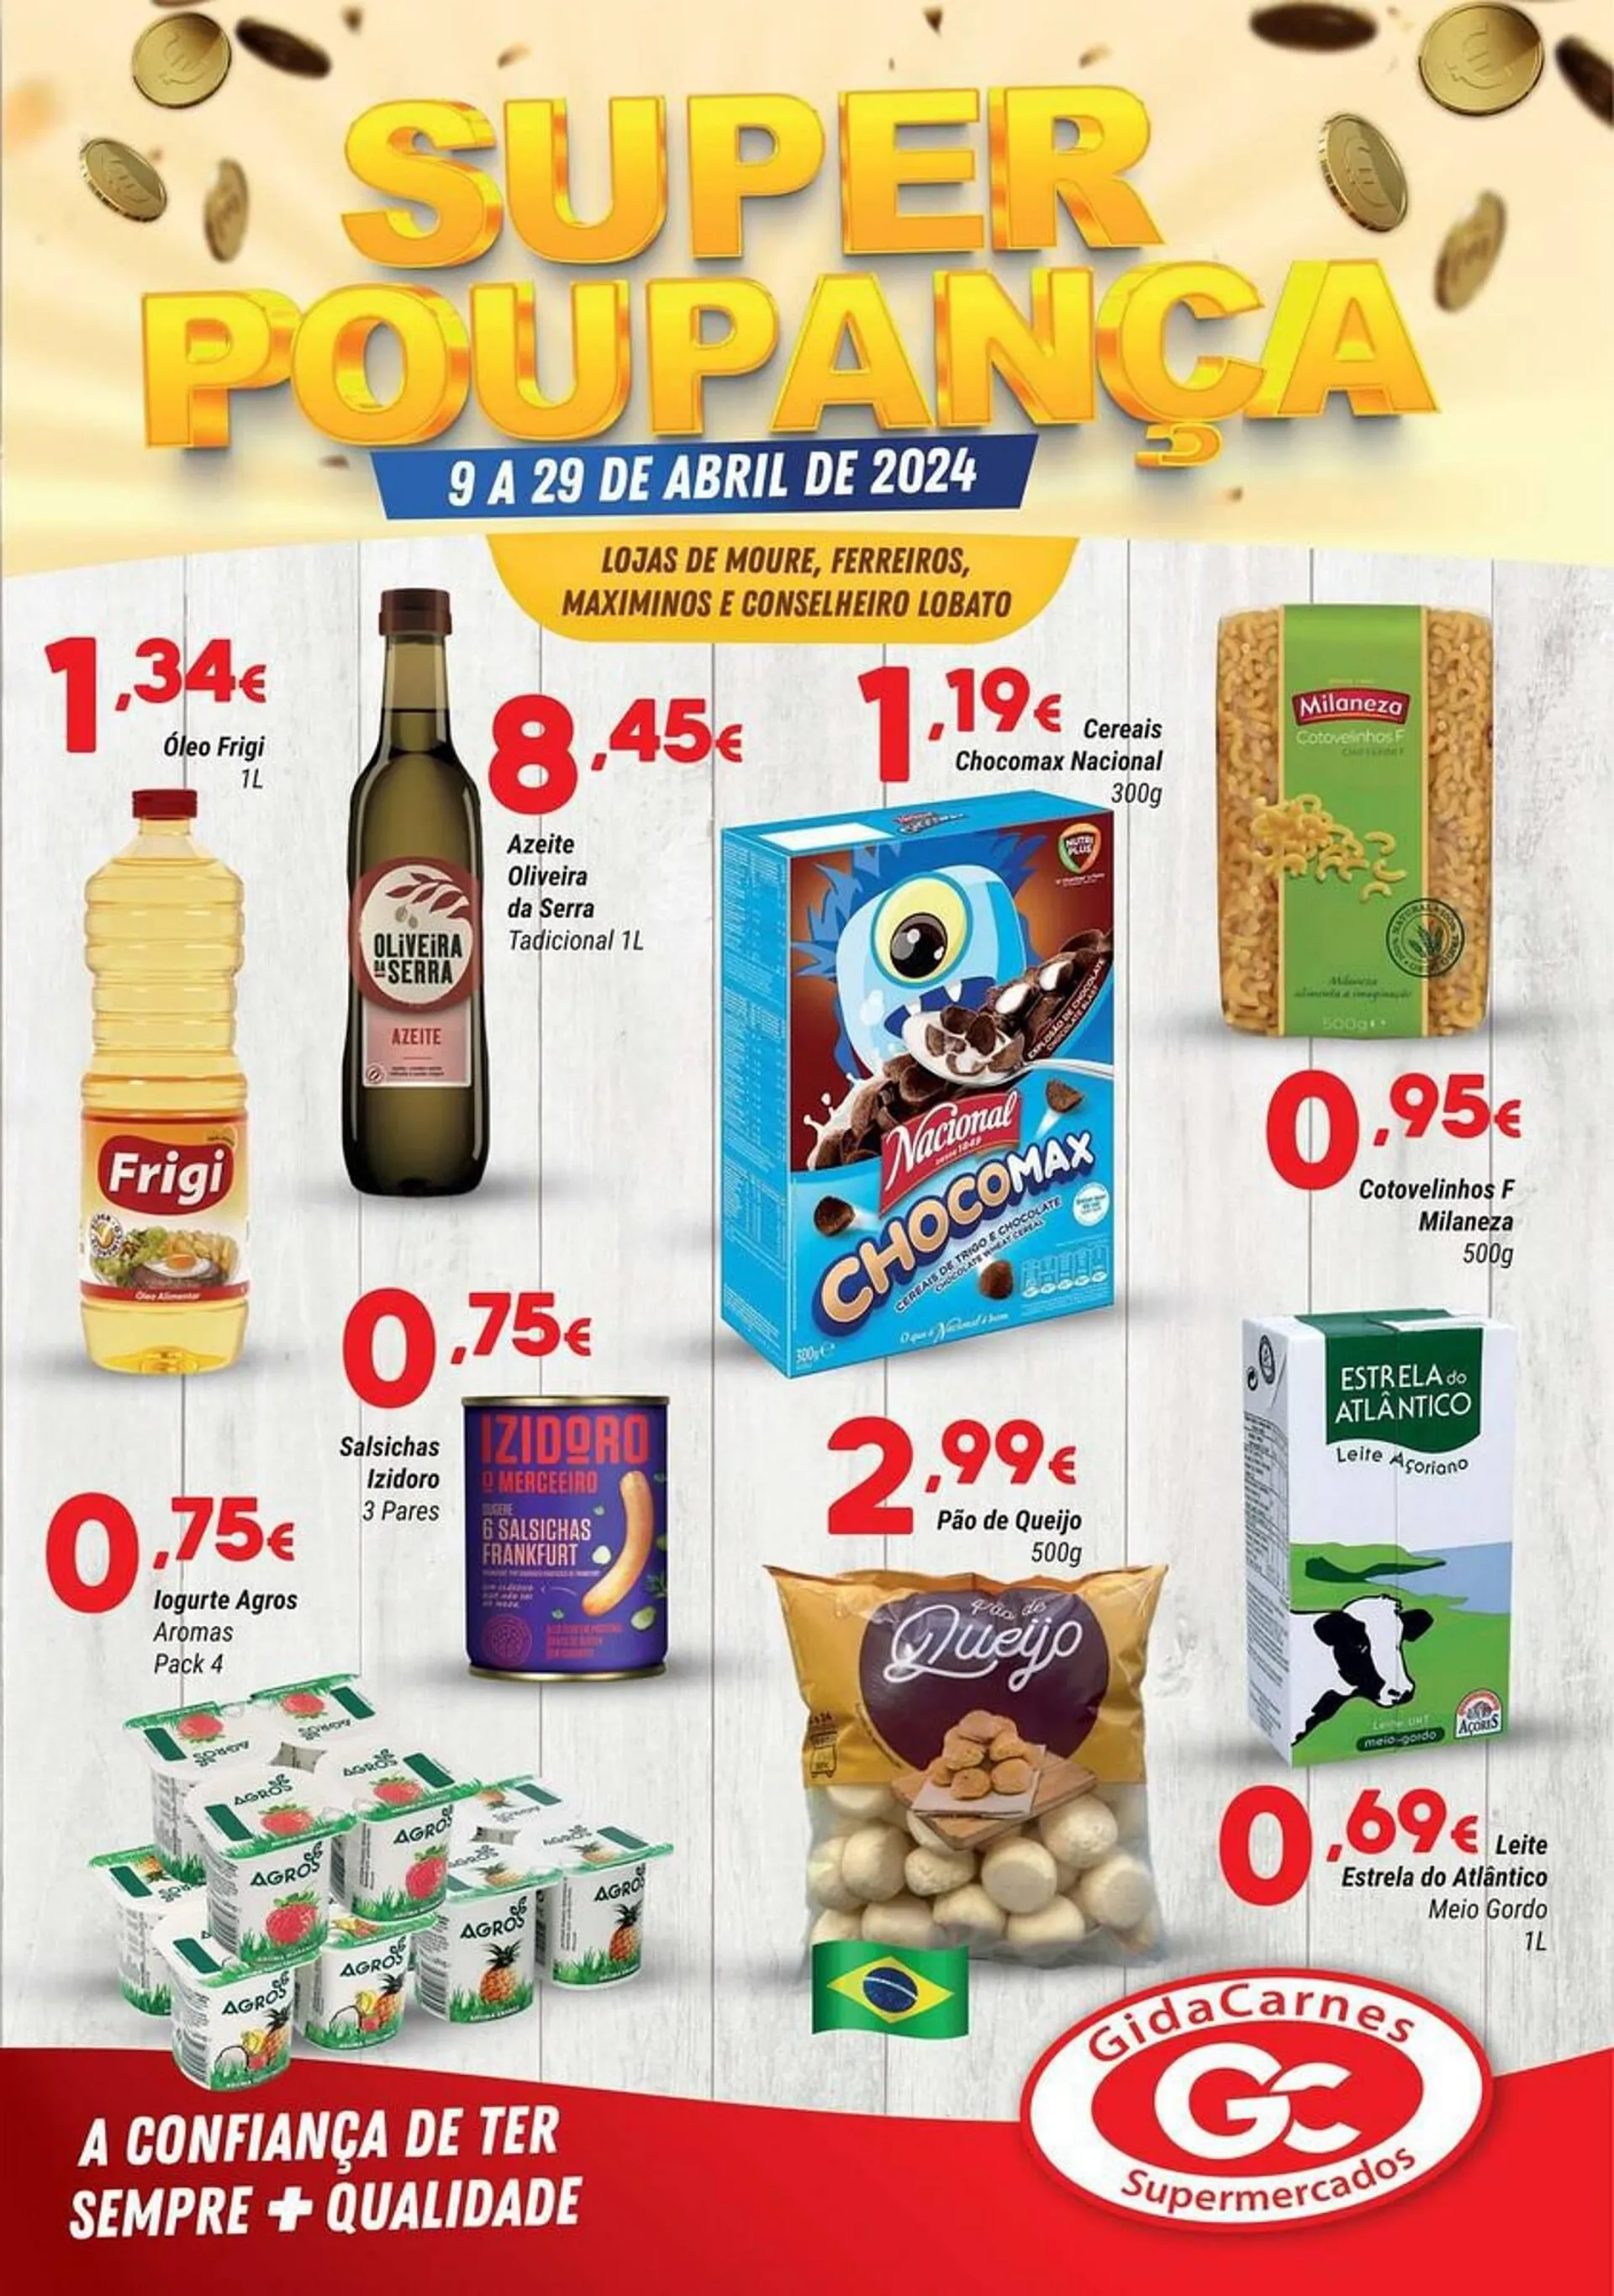 Folheto Folheto GidaCarnes Supermercados de 9 de abril até 29 de abril 2024 - Pagina 